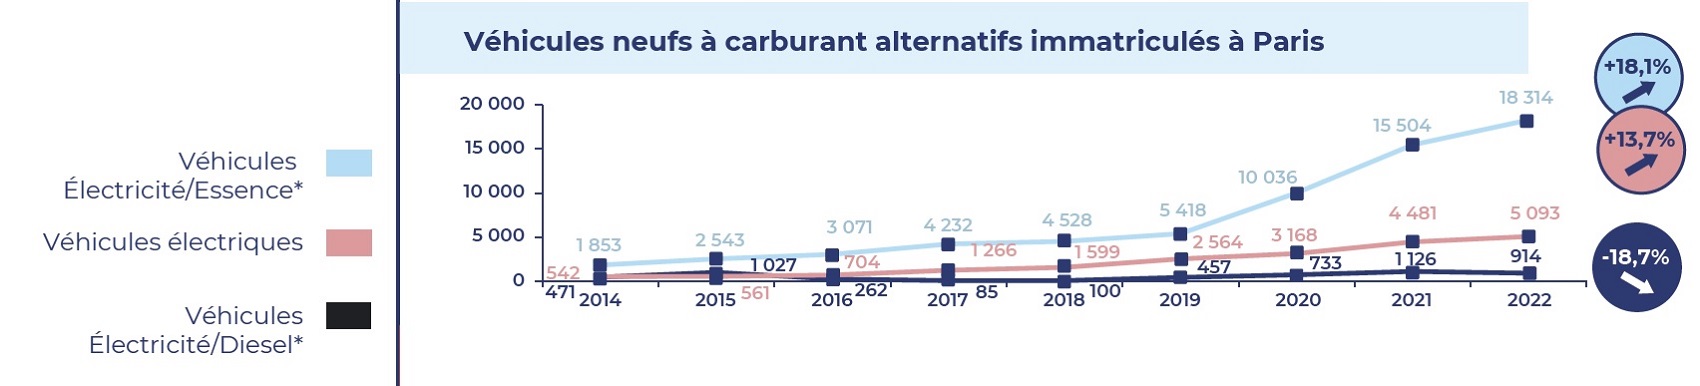 graphique représentant l'évolution du nombre de véhicules neufs à carburant alternatifs immatriculés à Paris en 2022